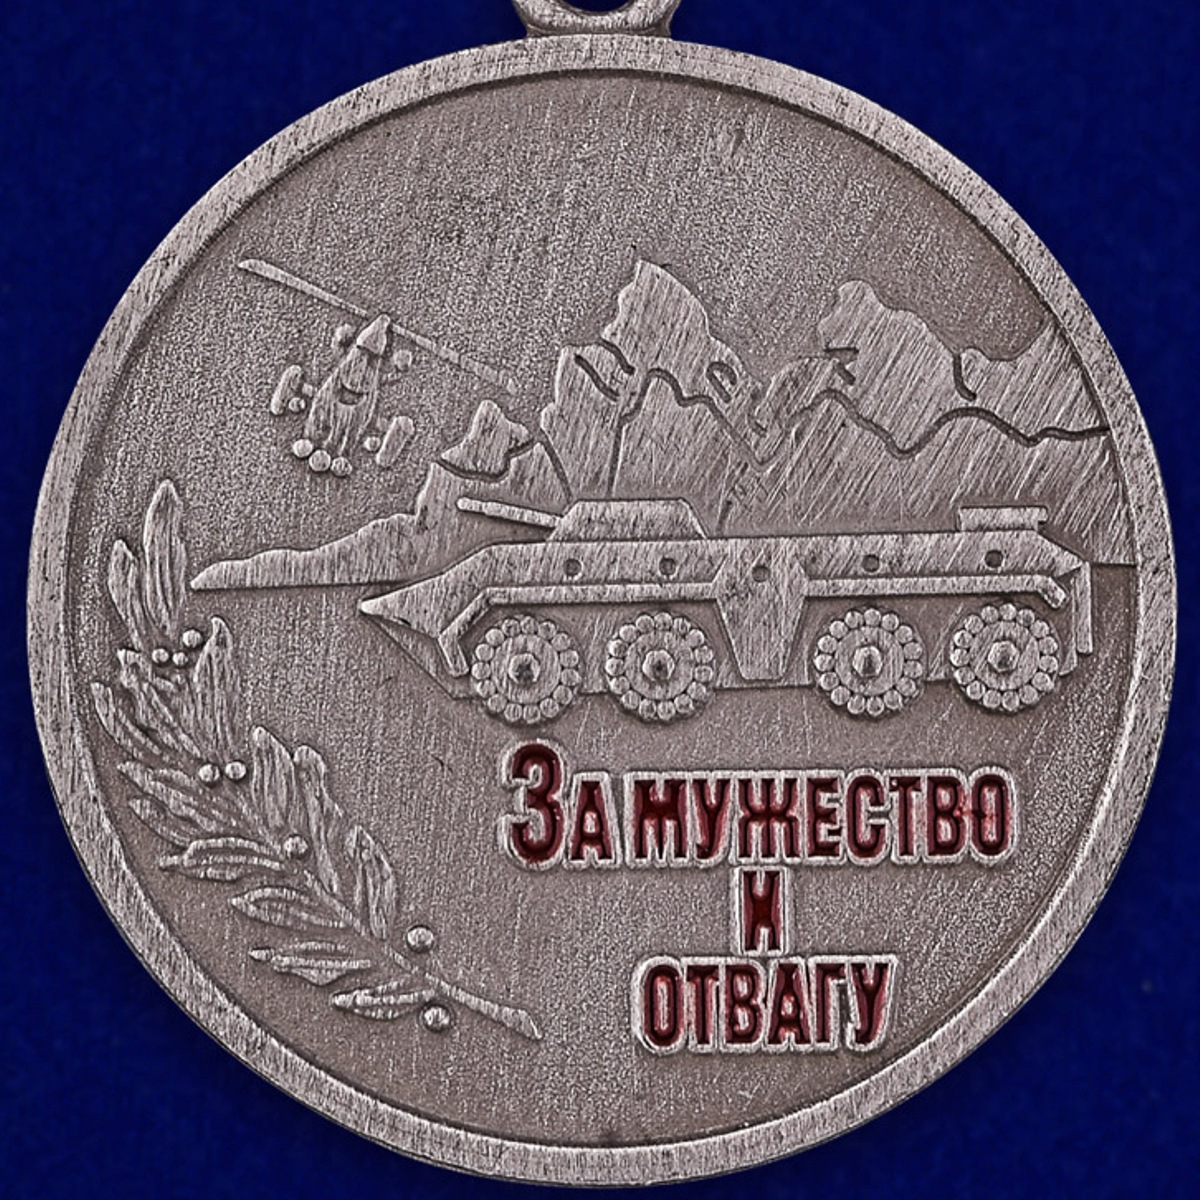 Медаль "За мужество и отвагу" 